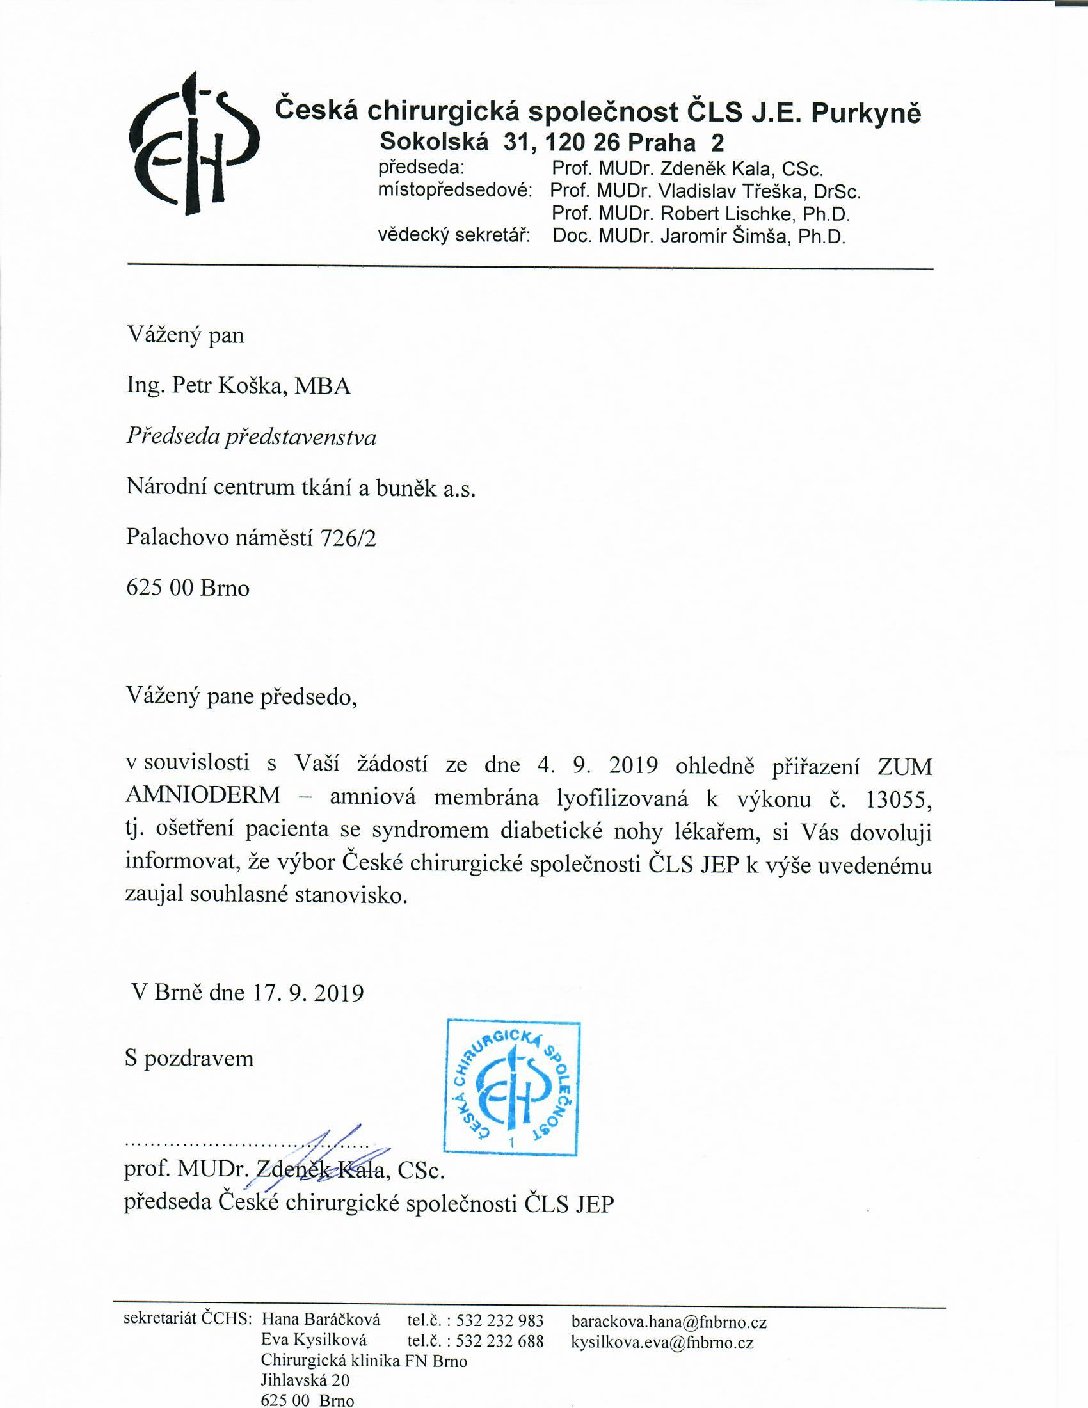 Stanovisko výboru ČCHS ČLS JEP k přiřazení ZUM Amnioderm k výkonu 13055 (17. 9. 2019)